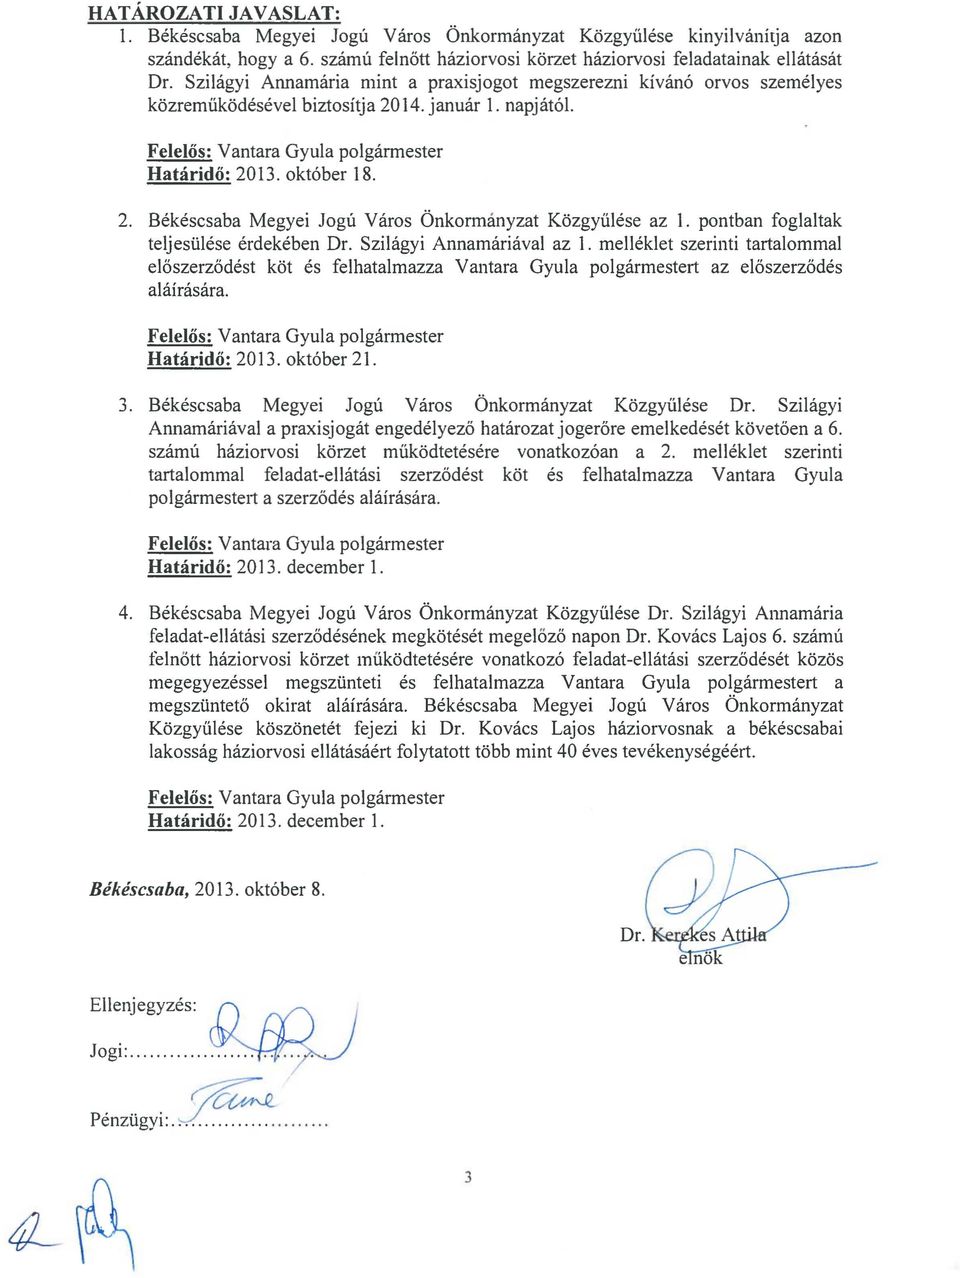 pontban foglaltak teljesülése érdekében Dr. Szilágyi Annamáriával az 1. melléklet szerinti tartalommal előszerződést köt és felhatalmazza Vantara Gyula polgármestert az előszerződés aláírására.